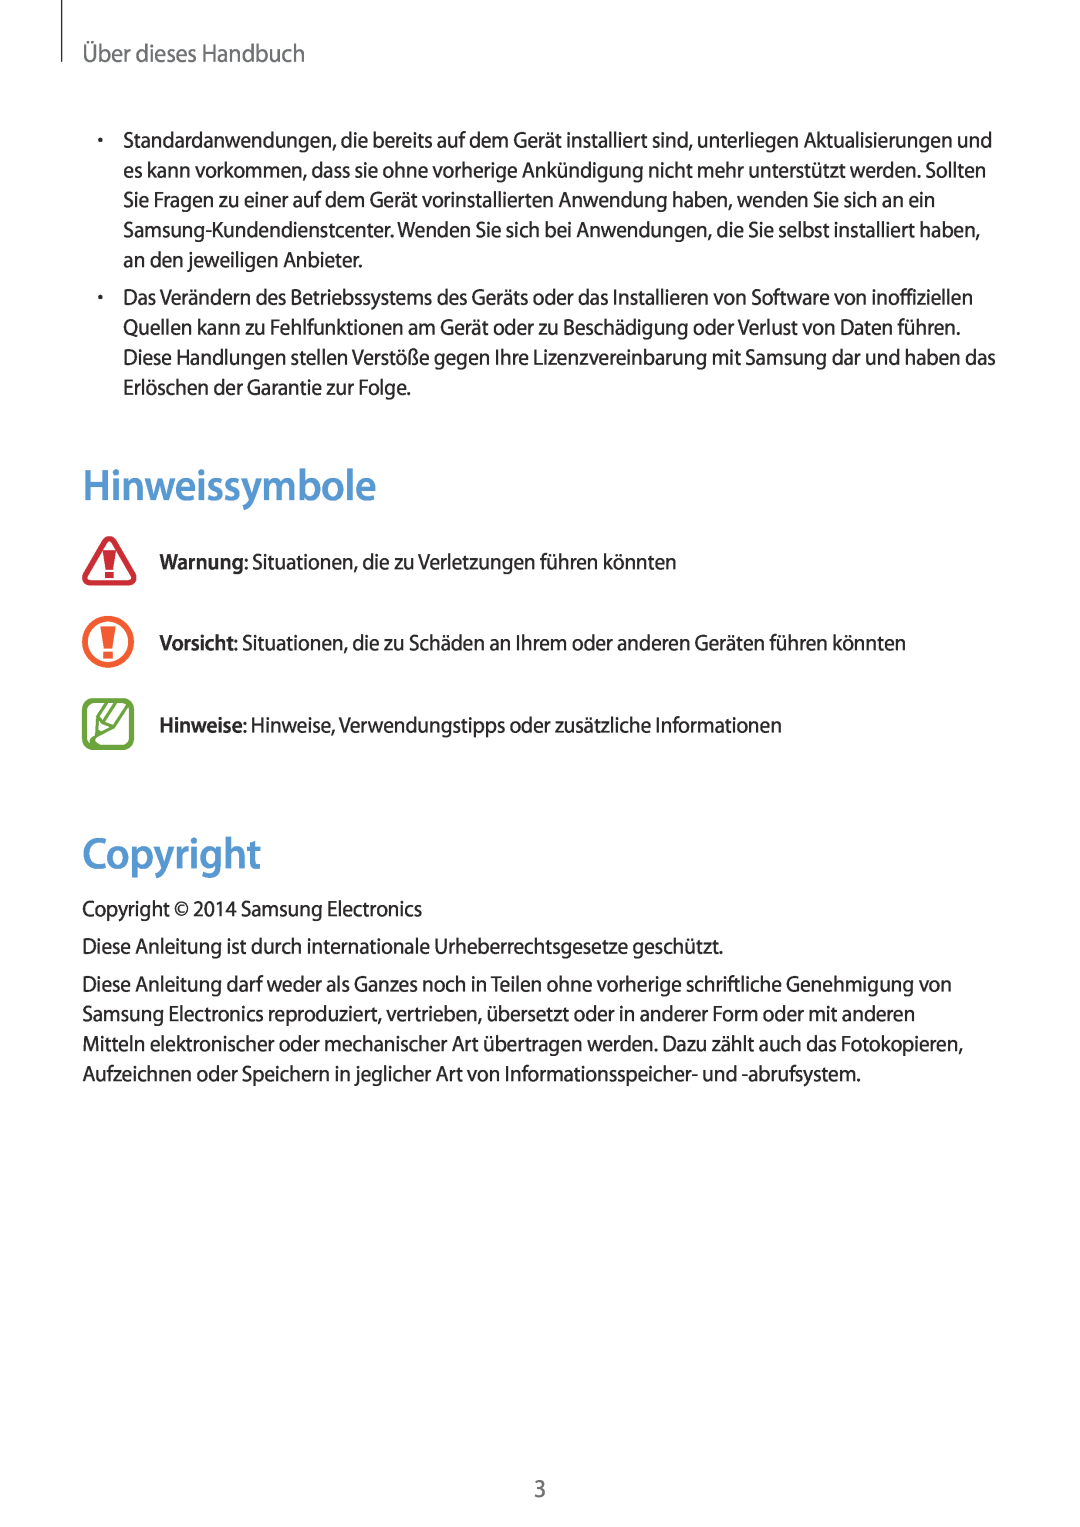 Samsung SM-P9000ZKAATO, SM-P9000ZWAATO, SM-P9000ZKAXEO, SM-P9000ZKASEB manual Hinweissymbole, Copyright, Über dieses Handbuch 